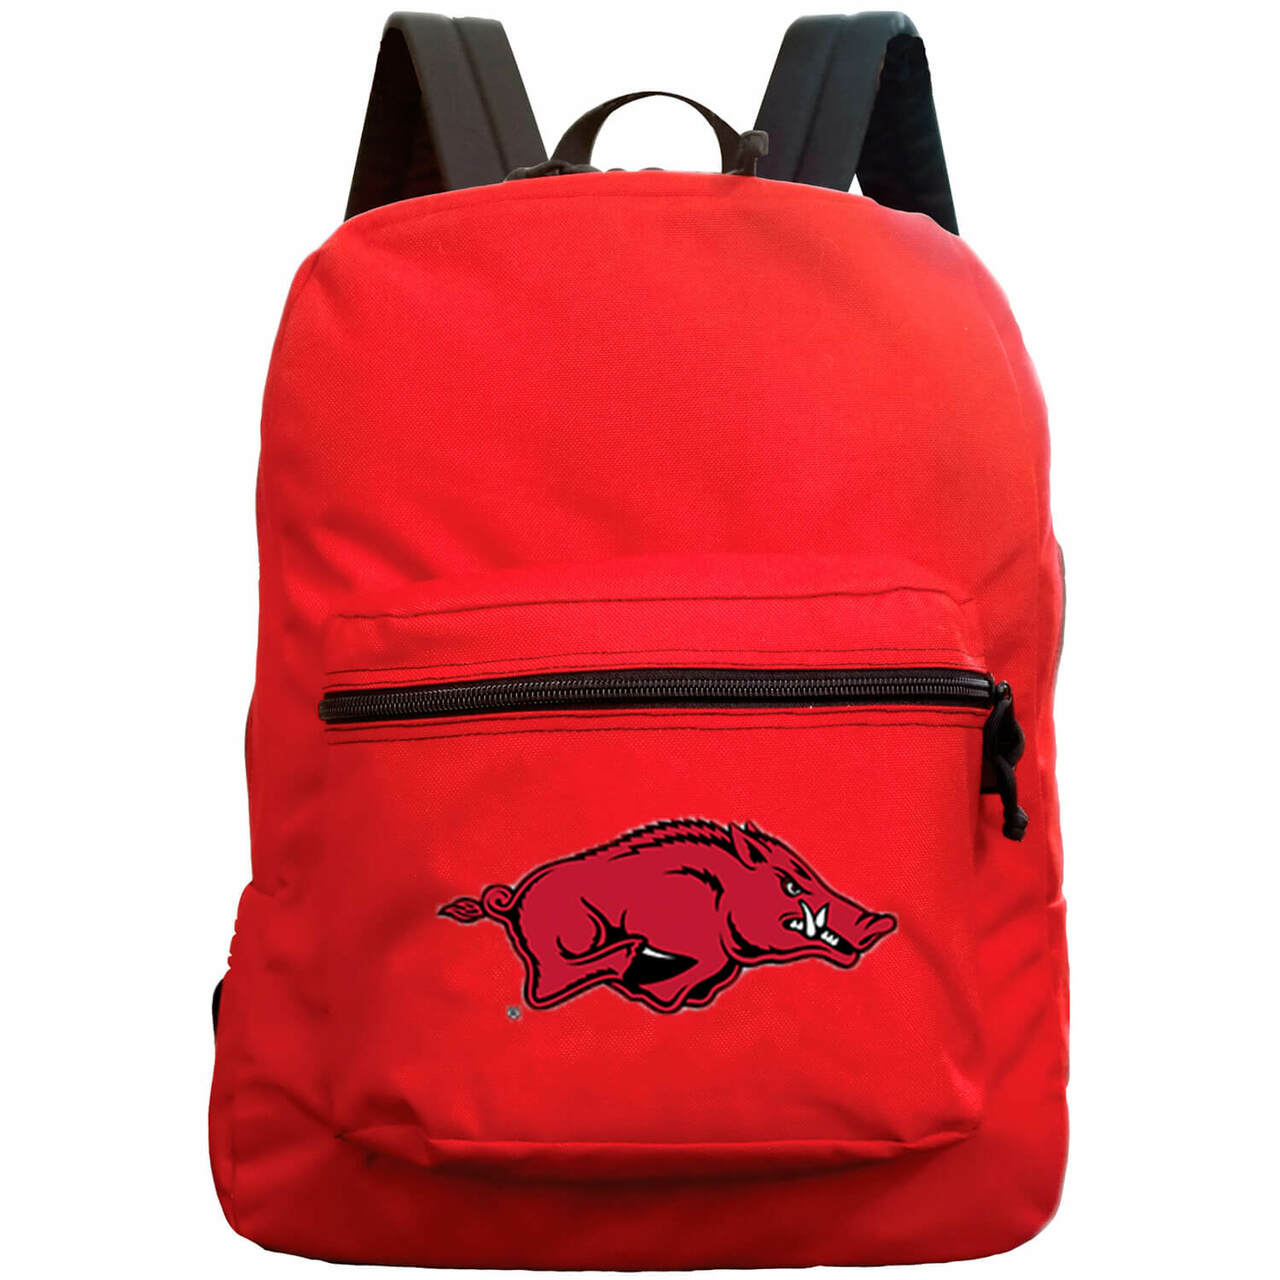 Arkansas Razorbacks Made in the USA premium Backpack in Red